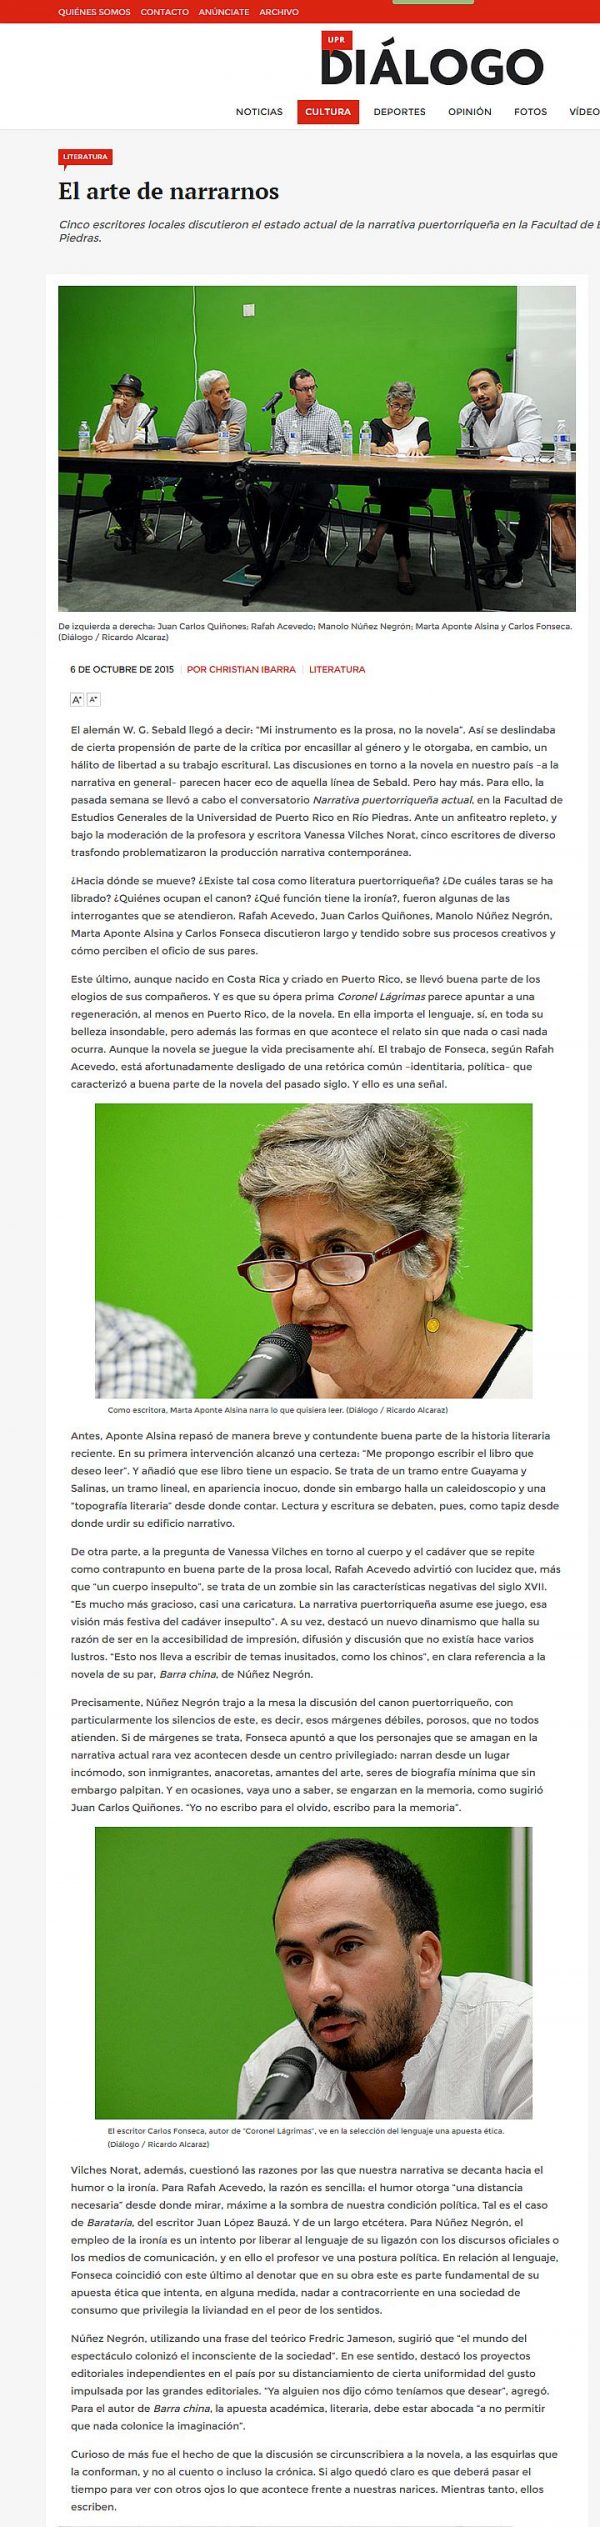 El arte de narrarnos, Narrativa Puertorriqueña Actual Reportaje del periódico Diálogo